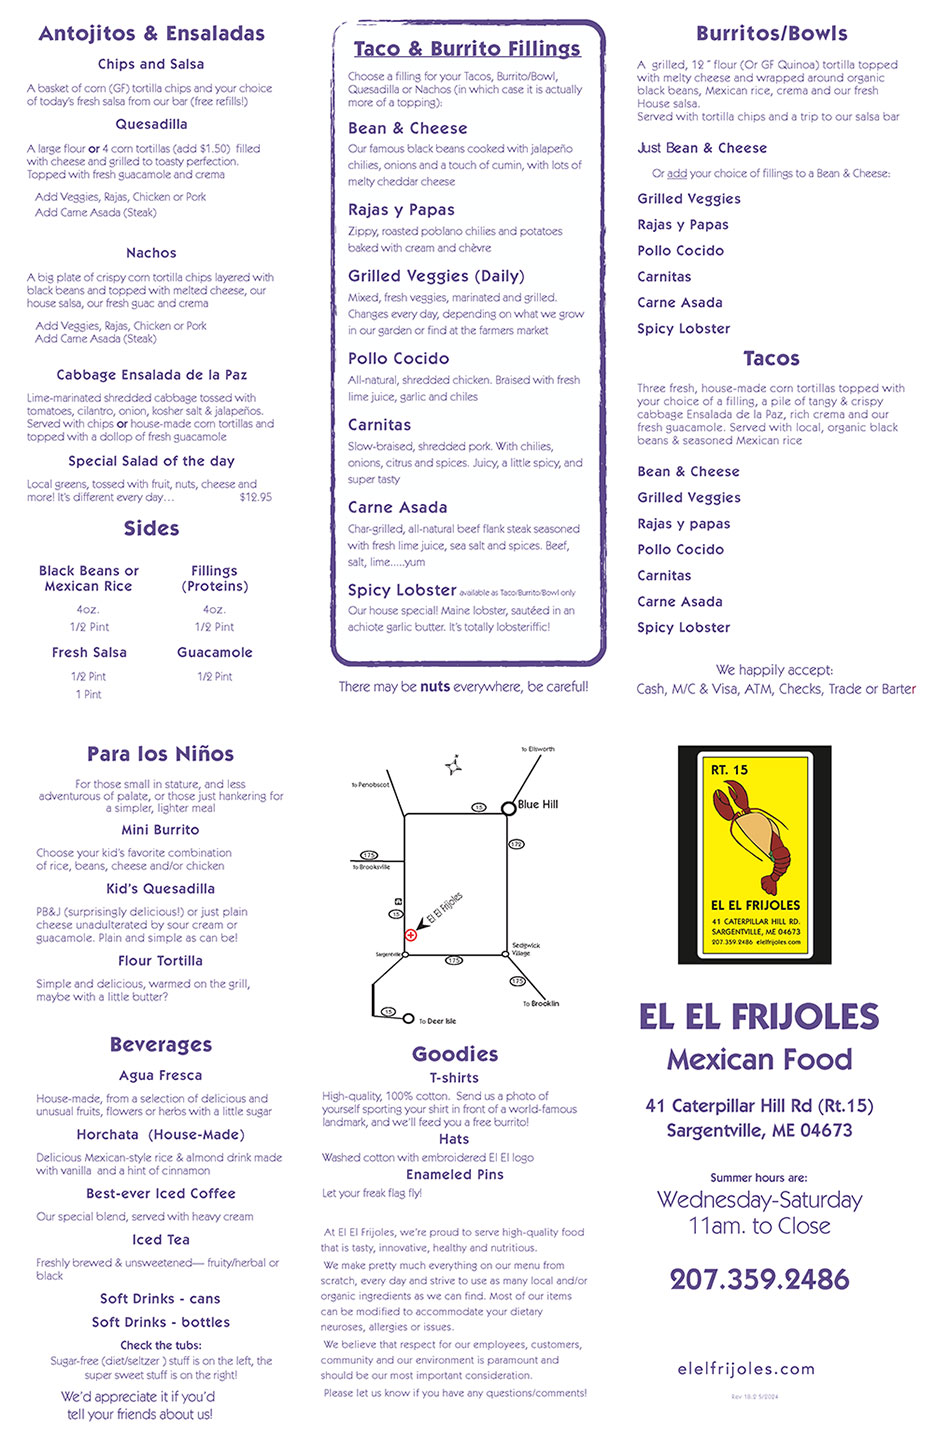 El El Frijoles menu page 1